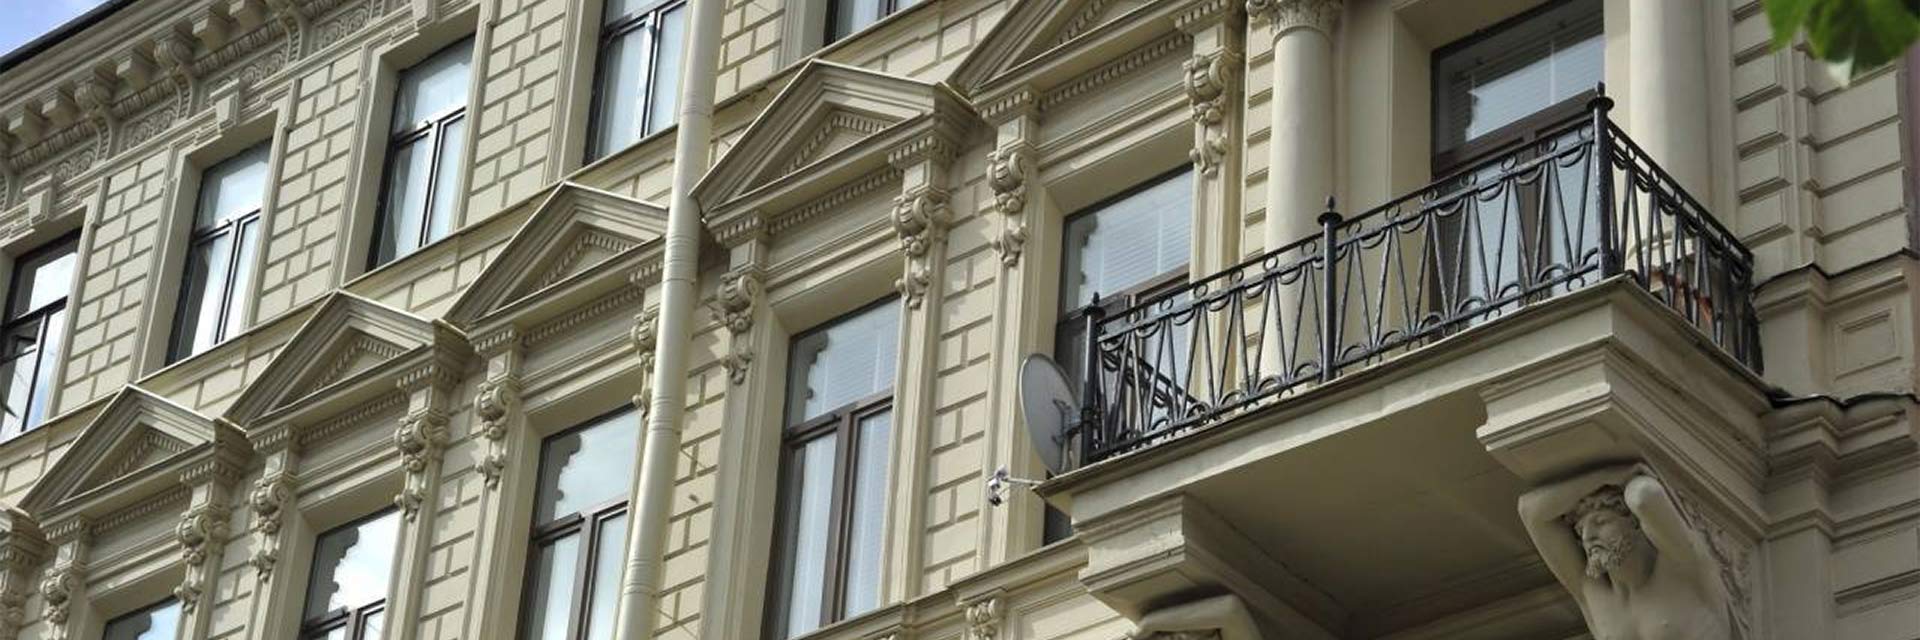 Реставрация фасадов зданий — ТПК Нижний Новгород